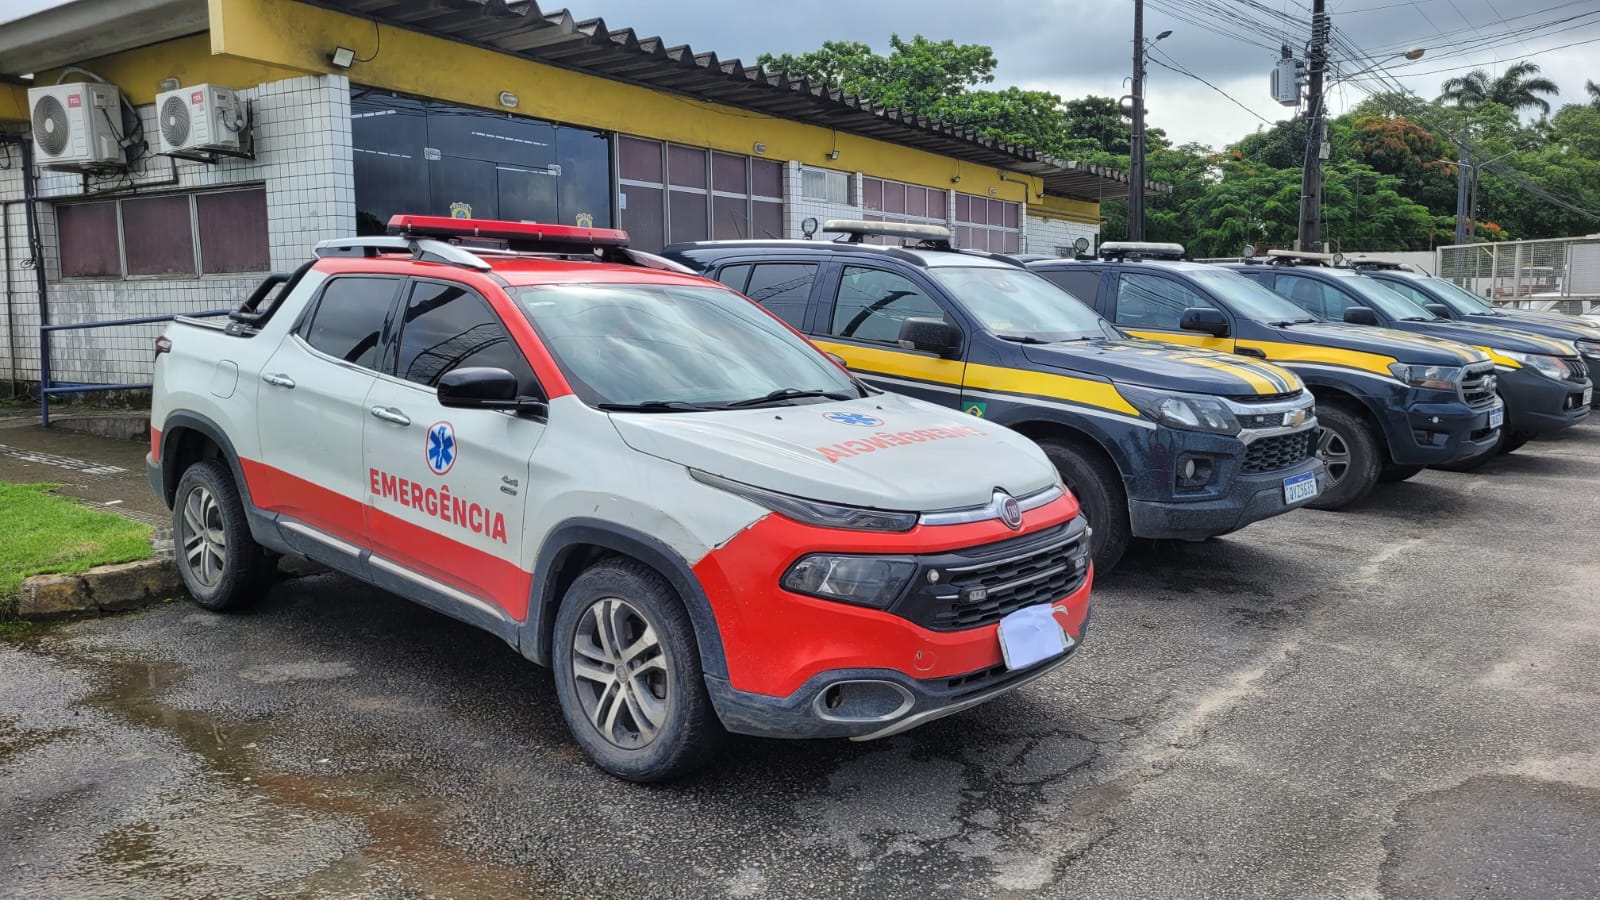 Caminhonete vira ambulância de forma irregular e é apreendida pela PRF no Recife